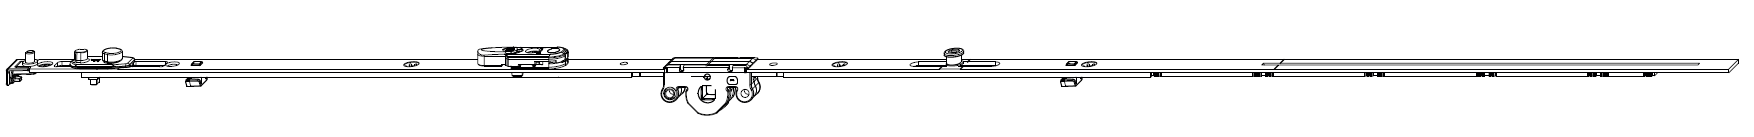 MAICO -  Cremonese MULTI-MATIC anta ribalta antieffrazione altezza maniglia fissa con piedino e dss per ribalta e bilanciere - gr / dim. 1090 - entrata 15 - alt. man. 400 - lbb/hbb 841 - 1090